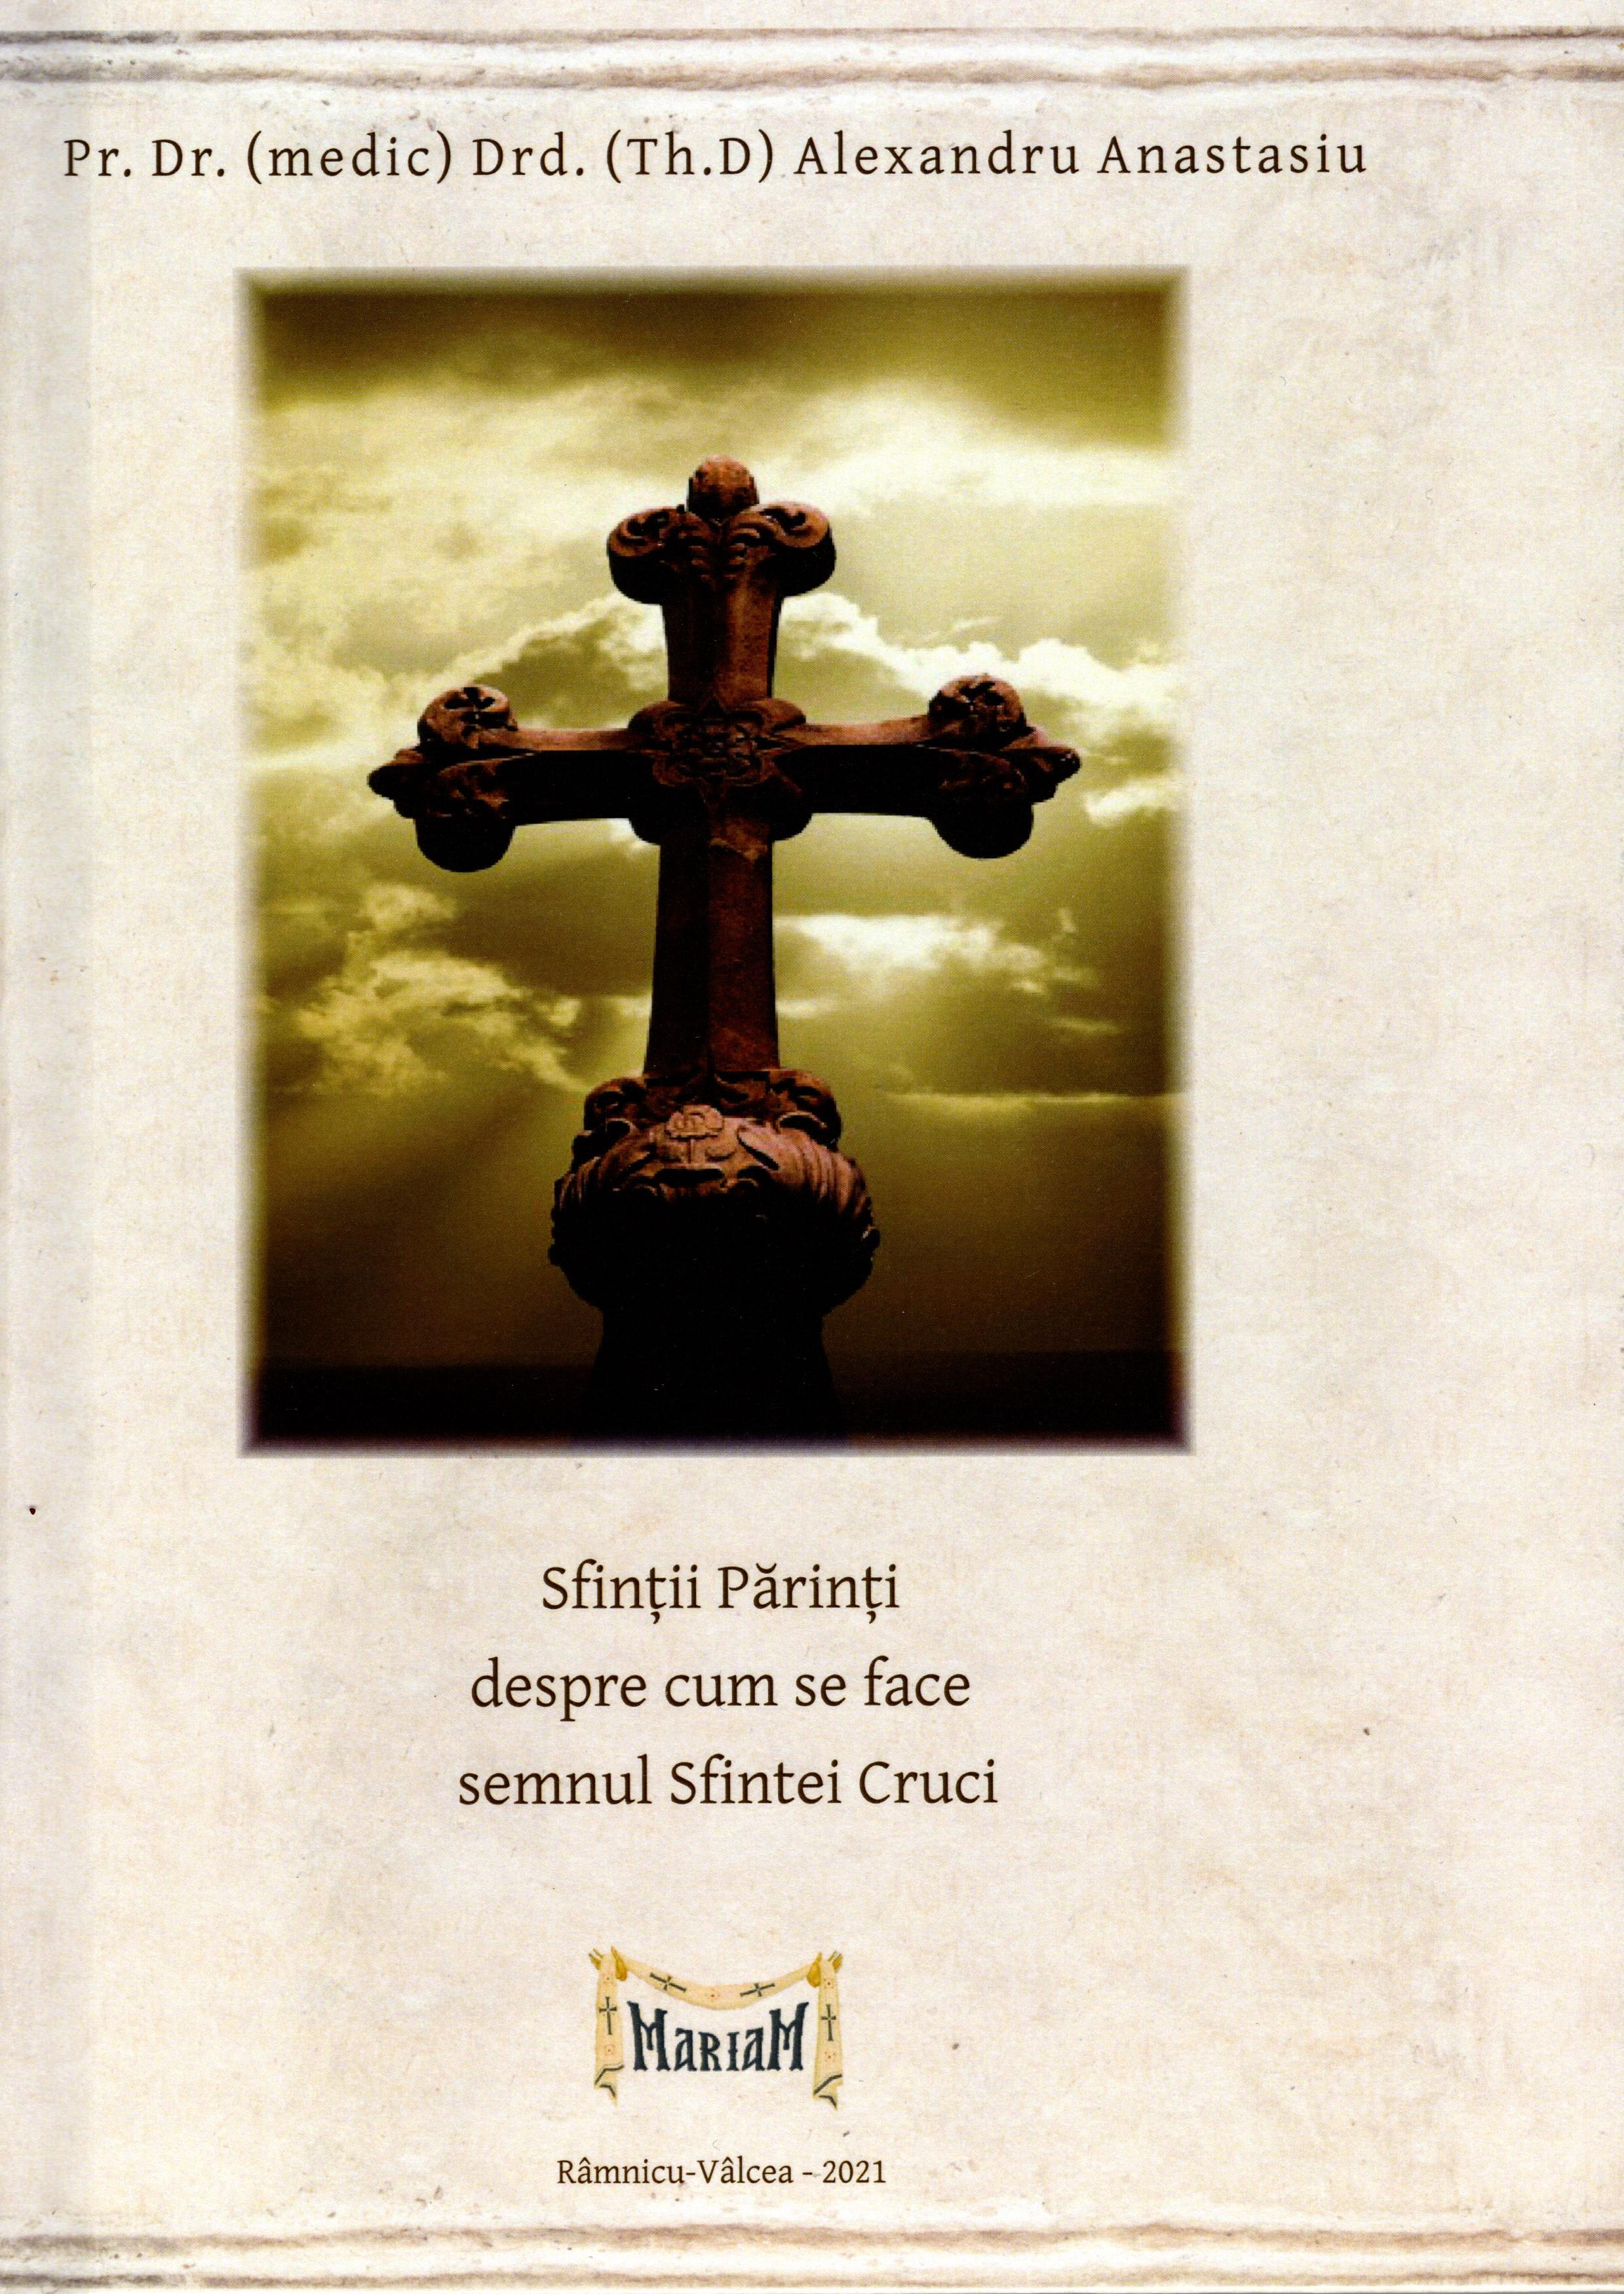 Sfinții Părinți despre cum se face semnul Sfintei Cruci